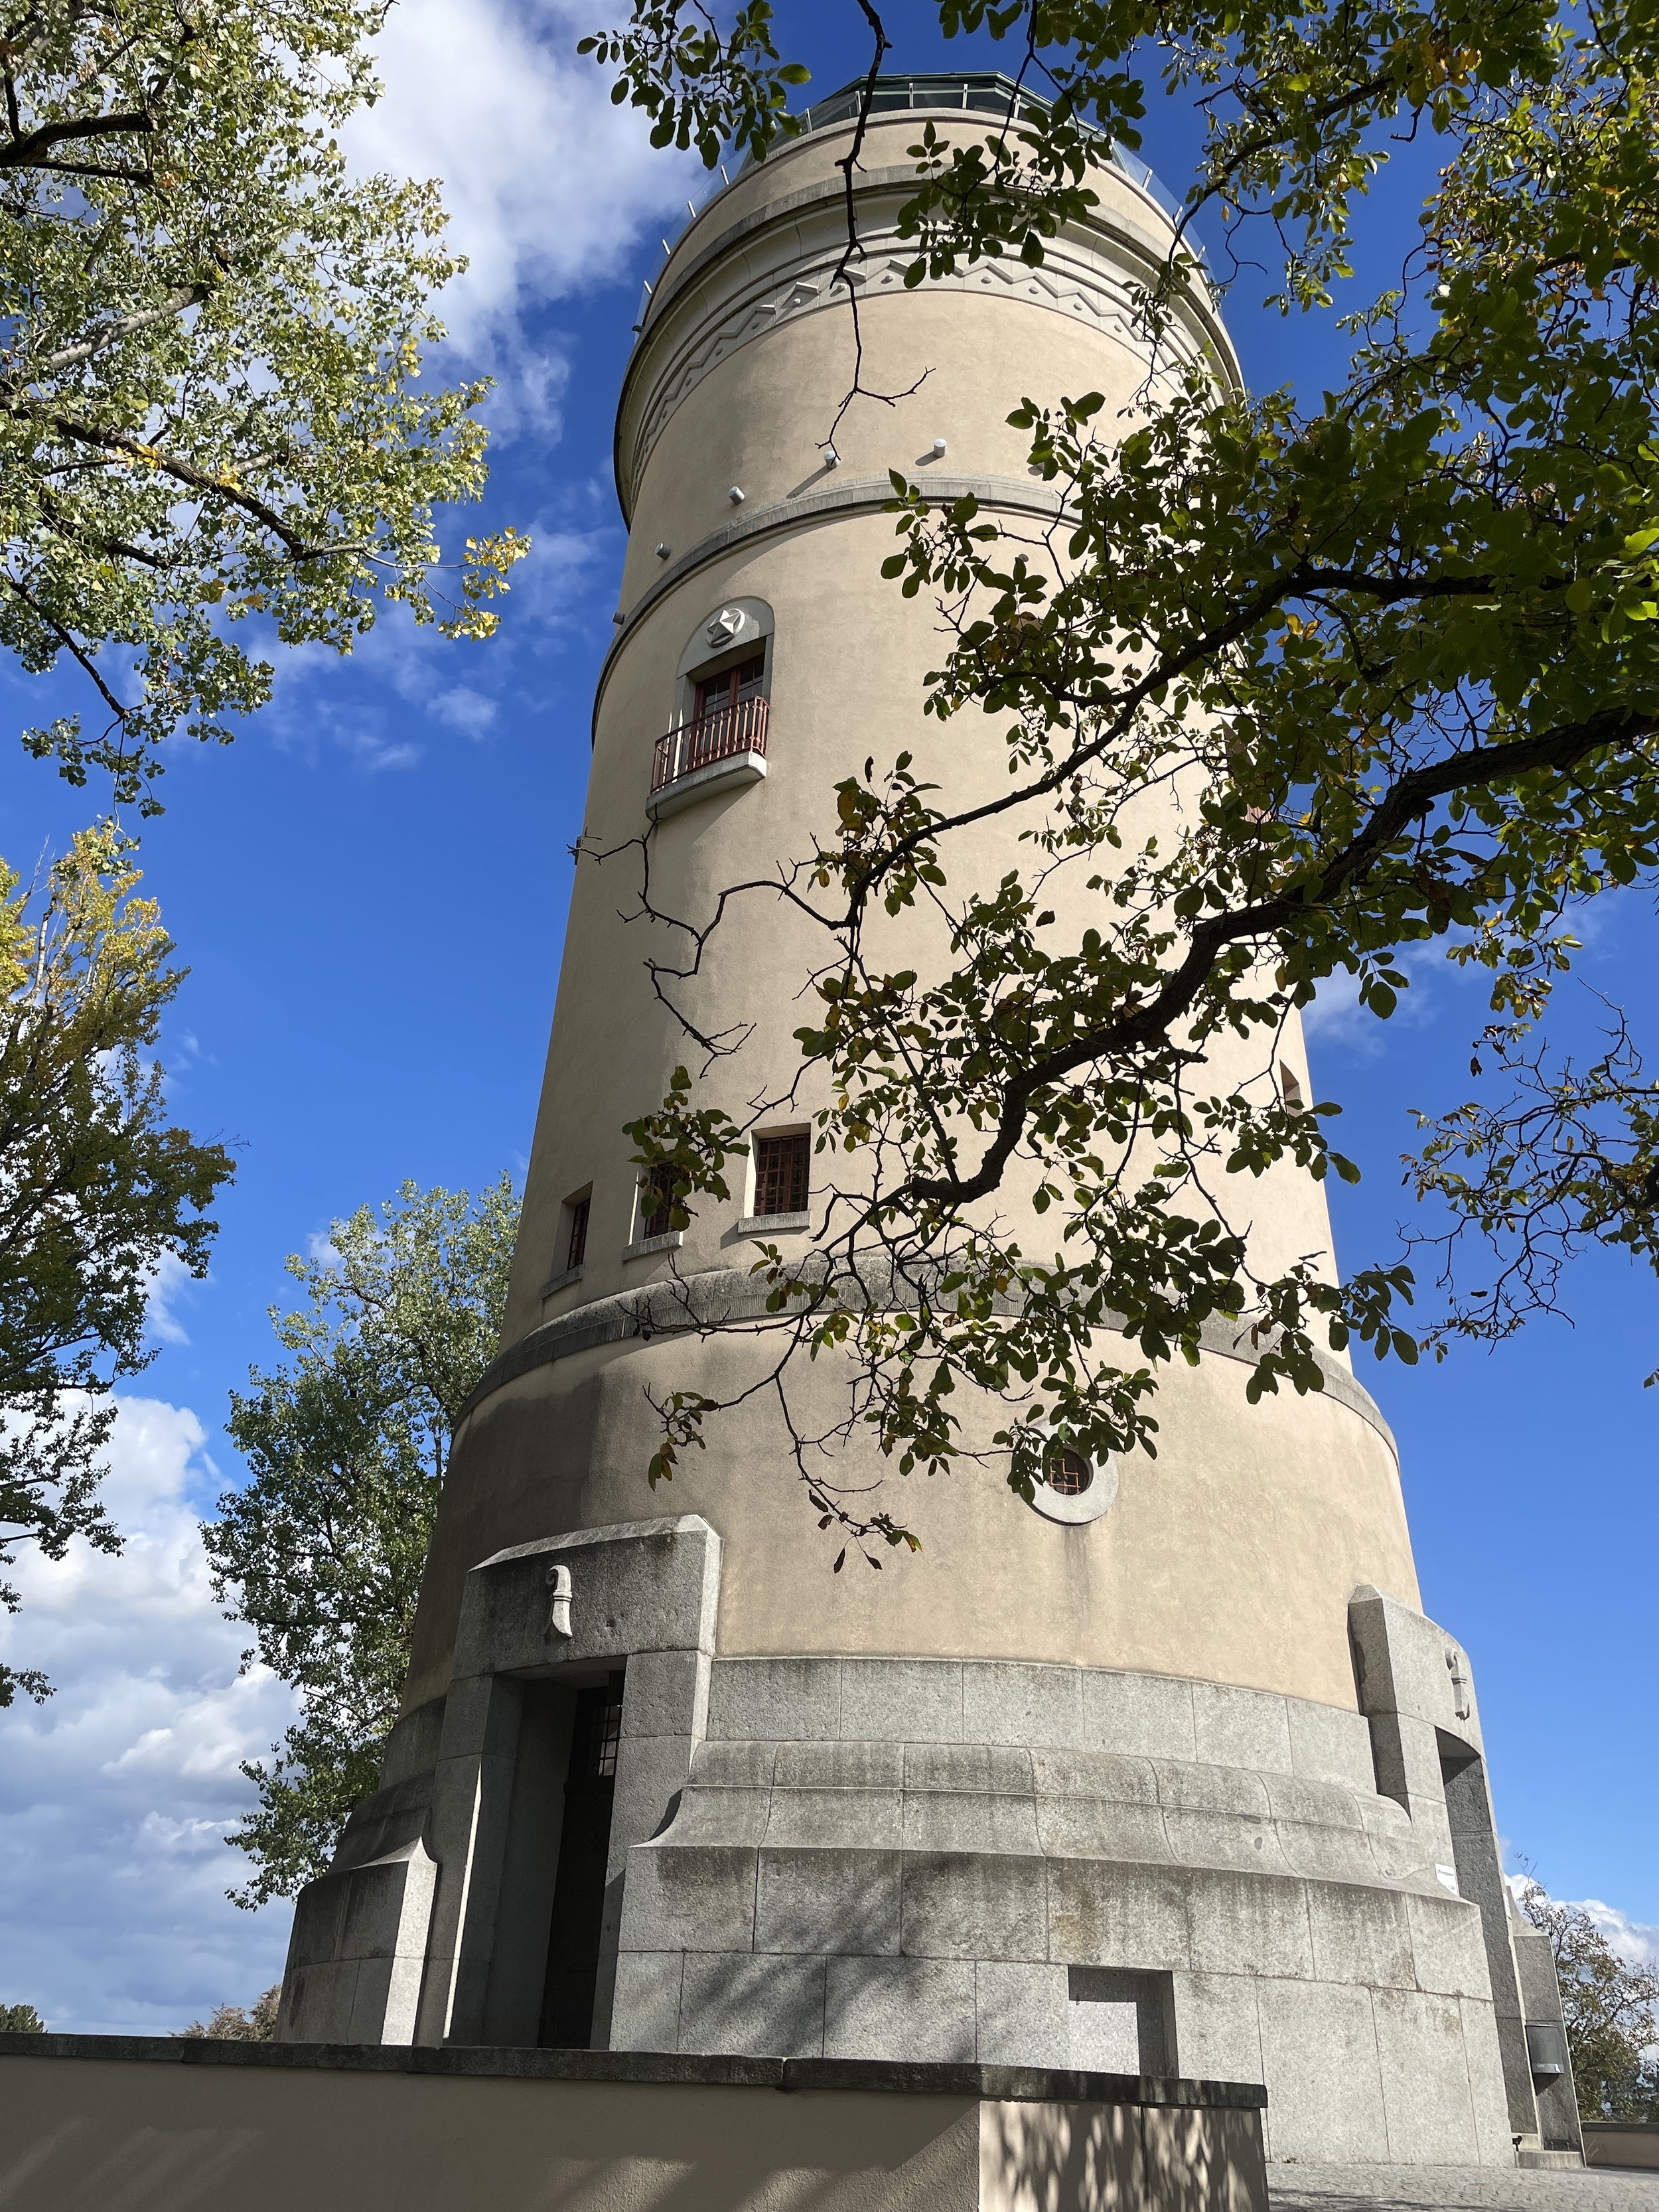 Bruderholz Water Tower